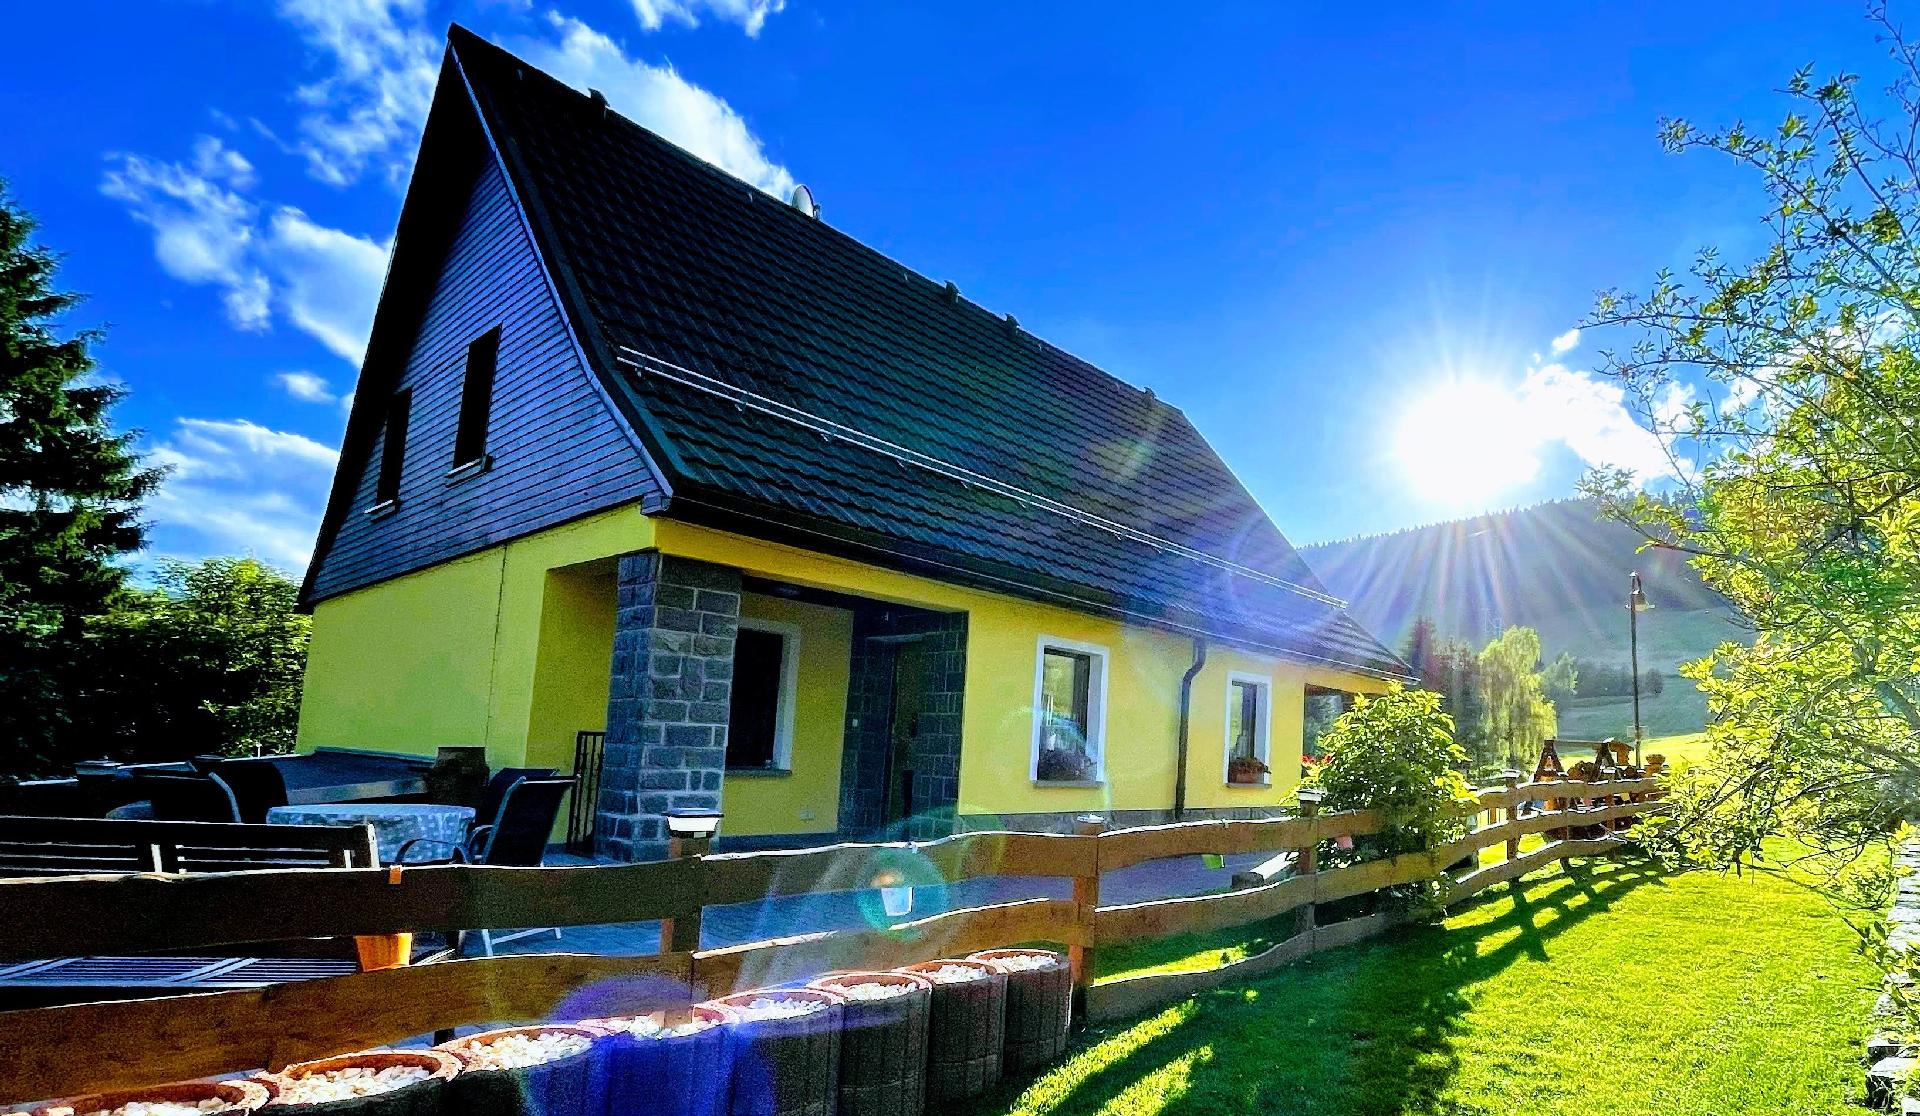 Tolles Ferienhaus in Kurort Oberwiesenthal mit Gar  in Deutschland